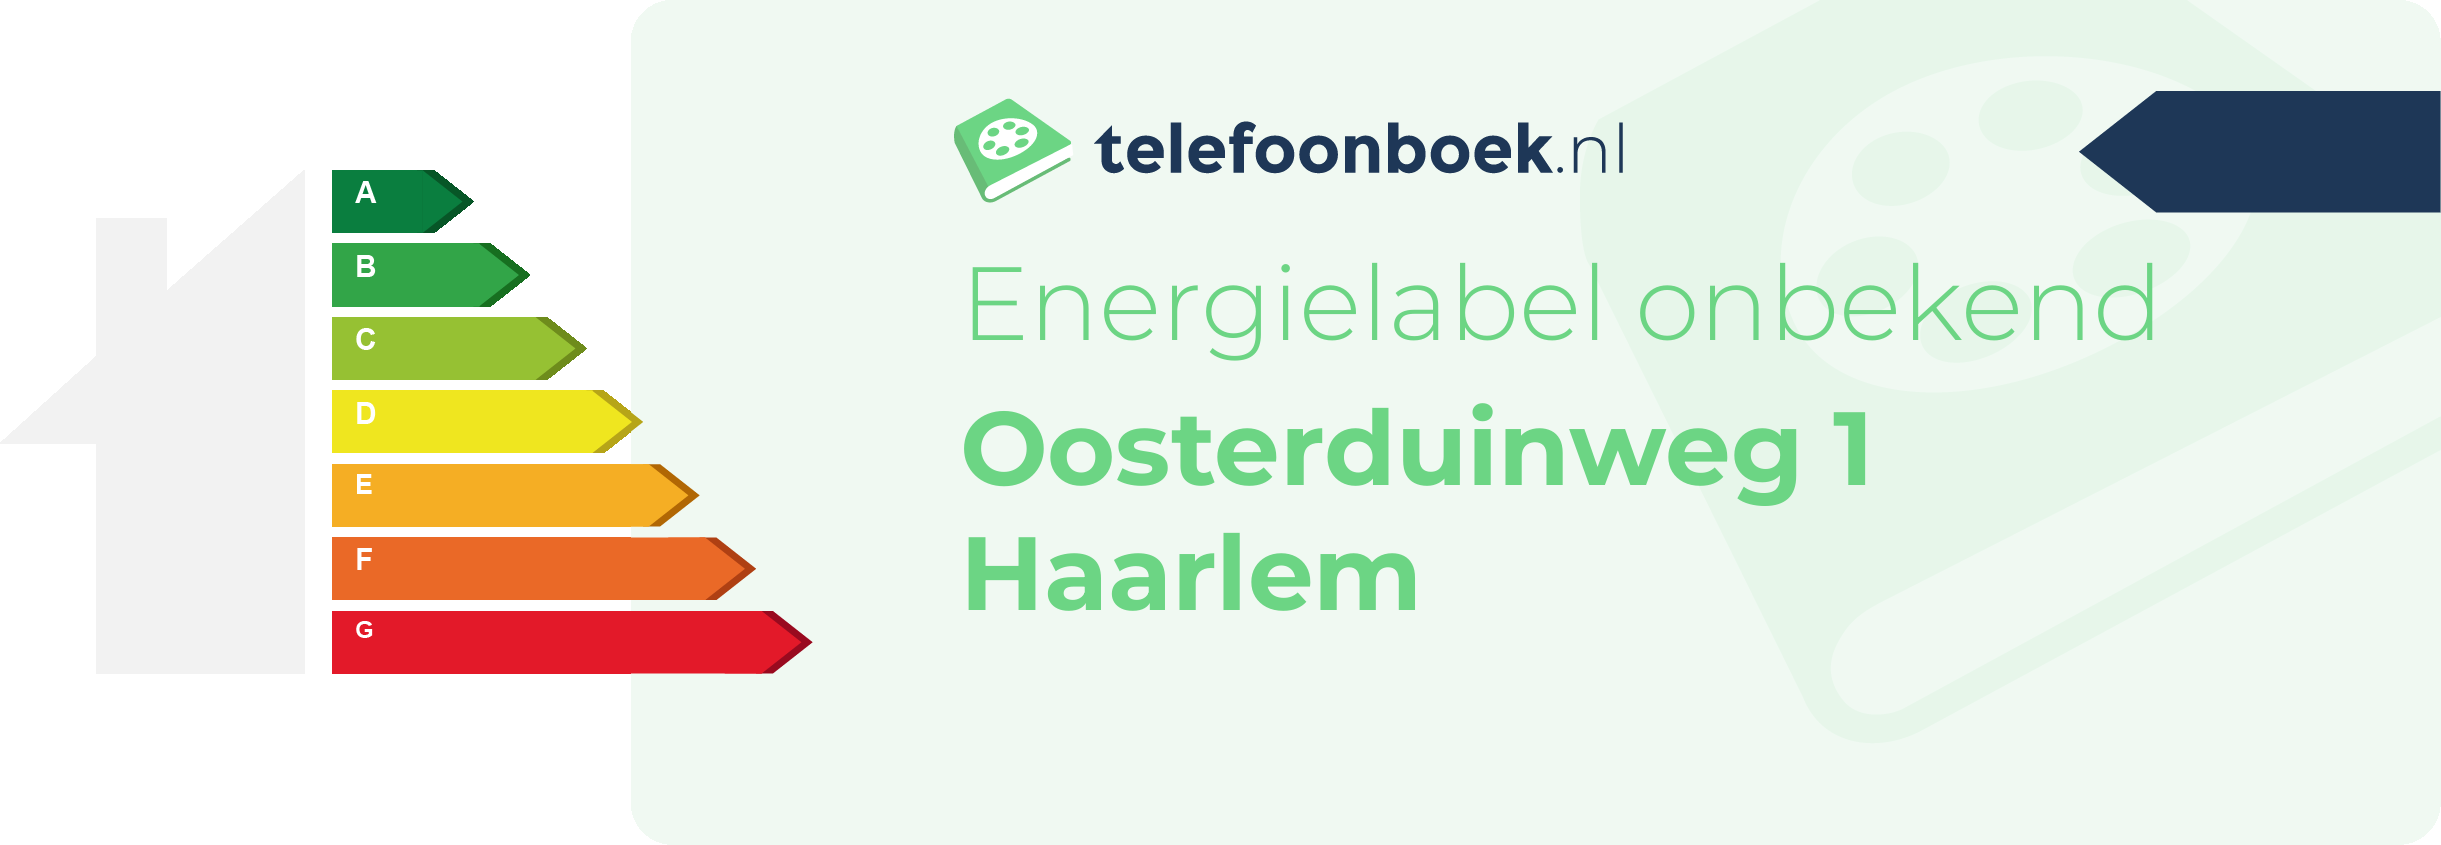 Energielabel Oosterduinweg 1 Haarlem